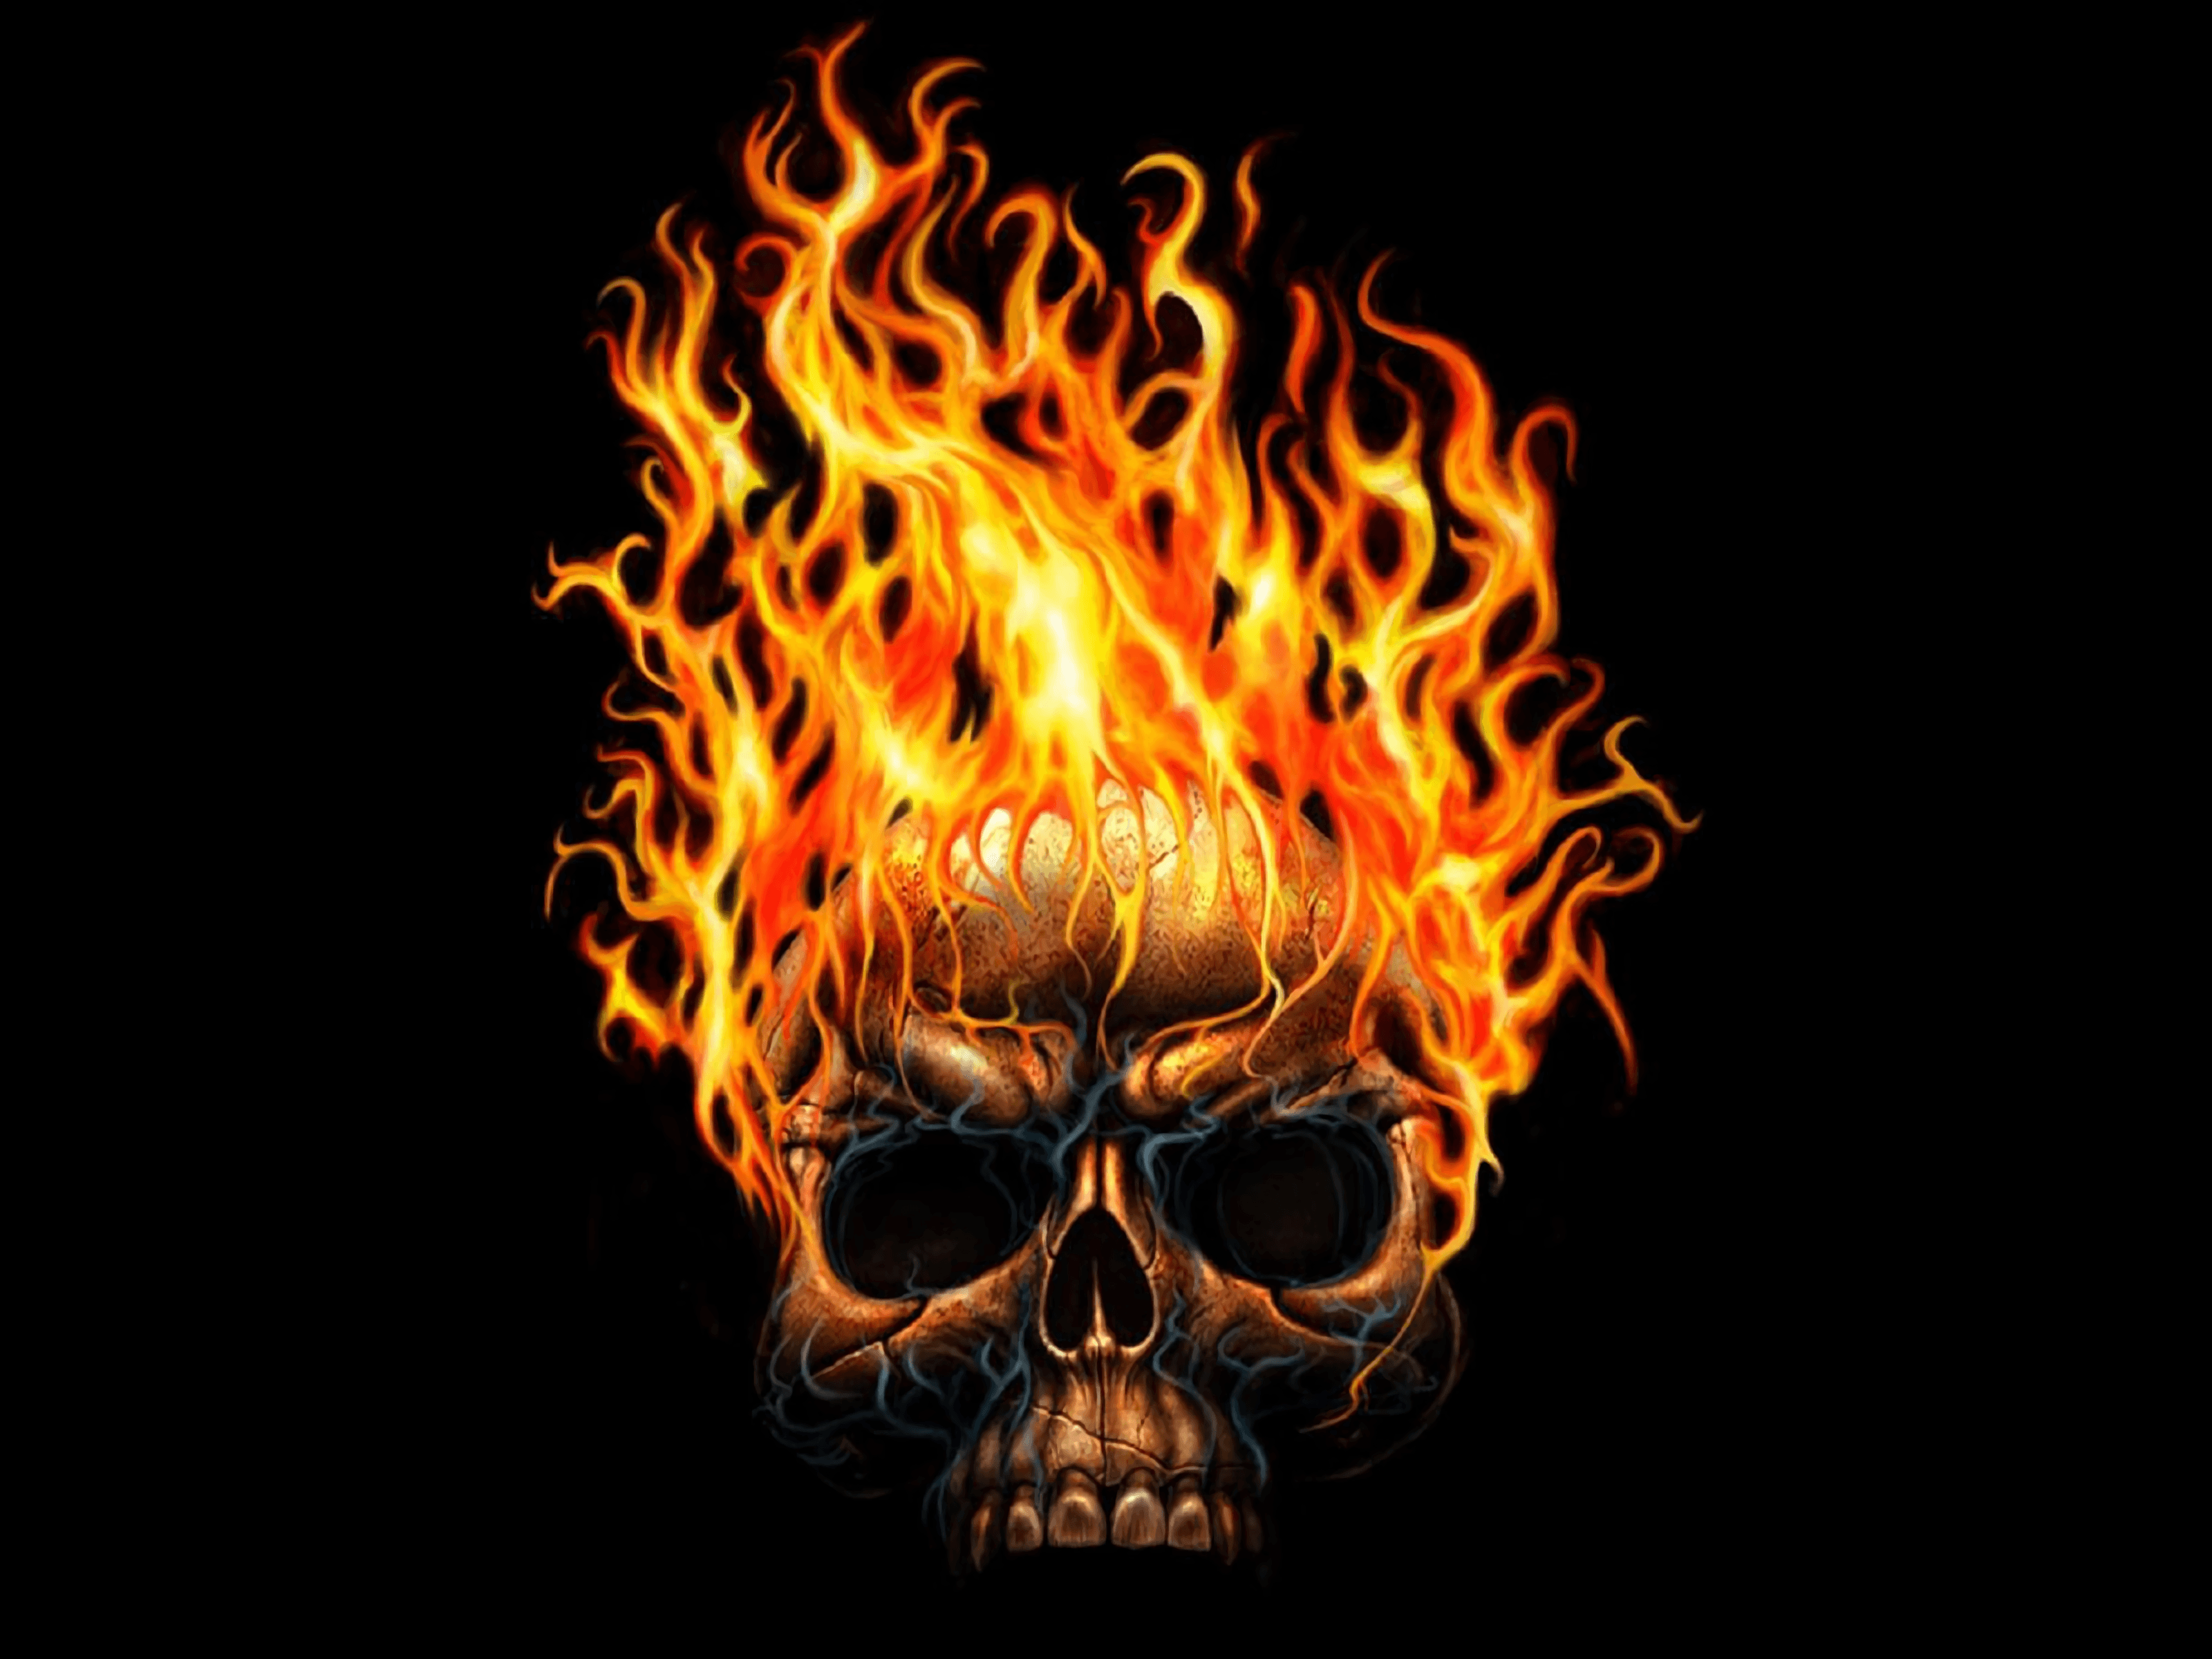 Flaming Skull Wallpaper Free Flaming Skull